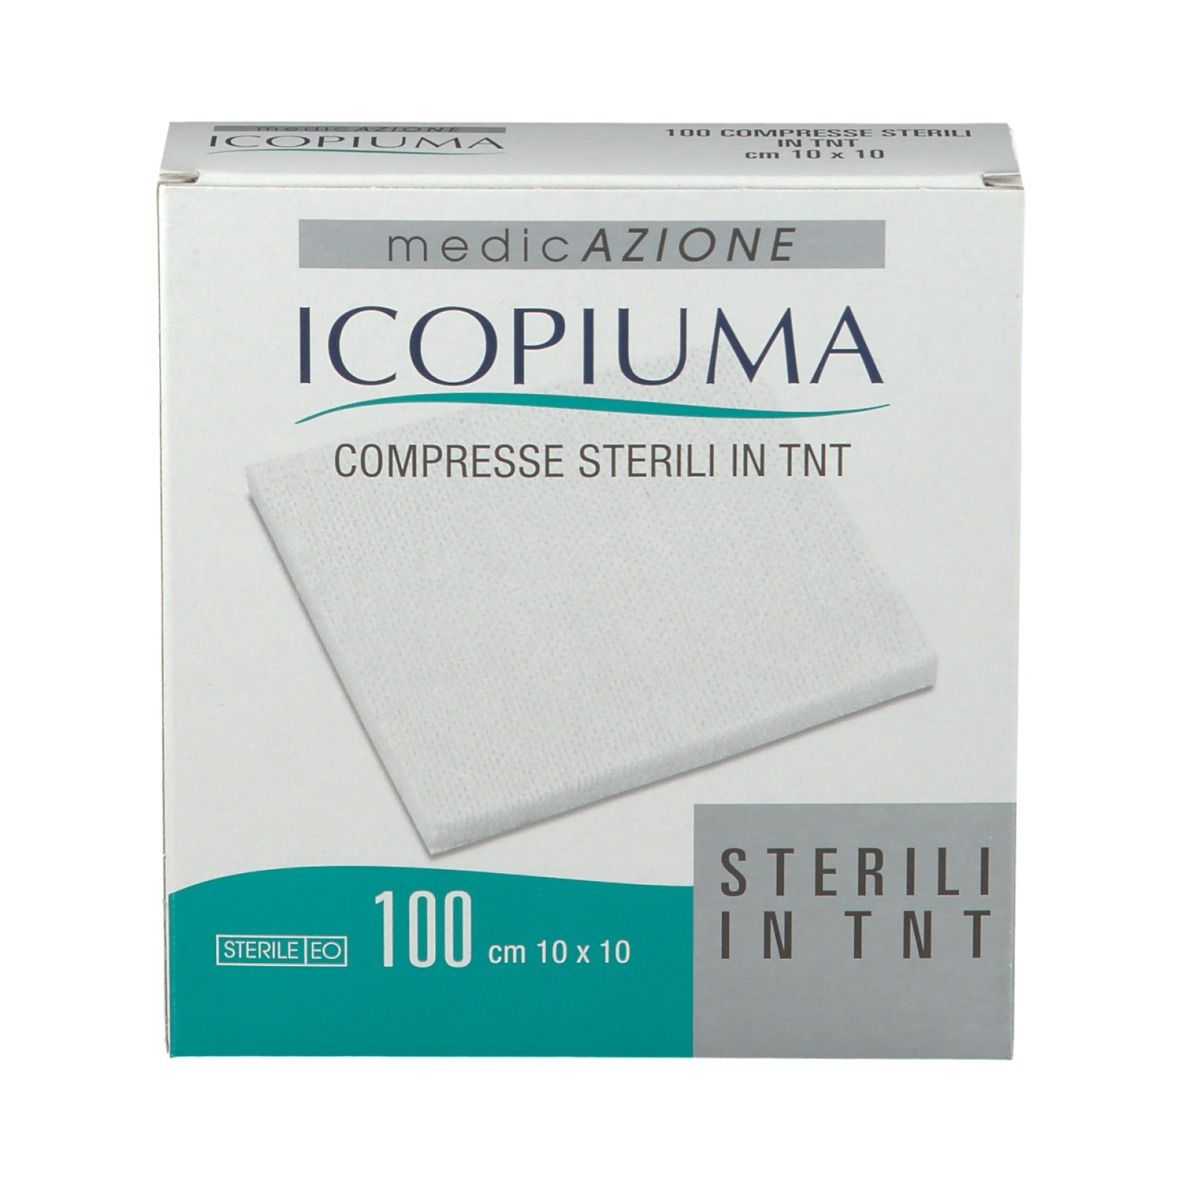 Icopiuma Compresse Sterili in TNT